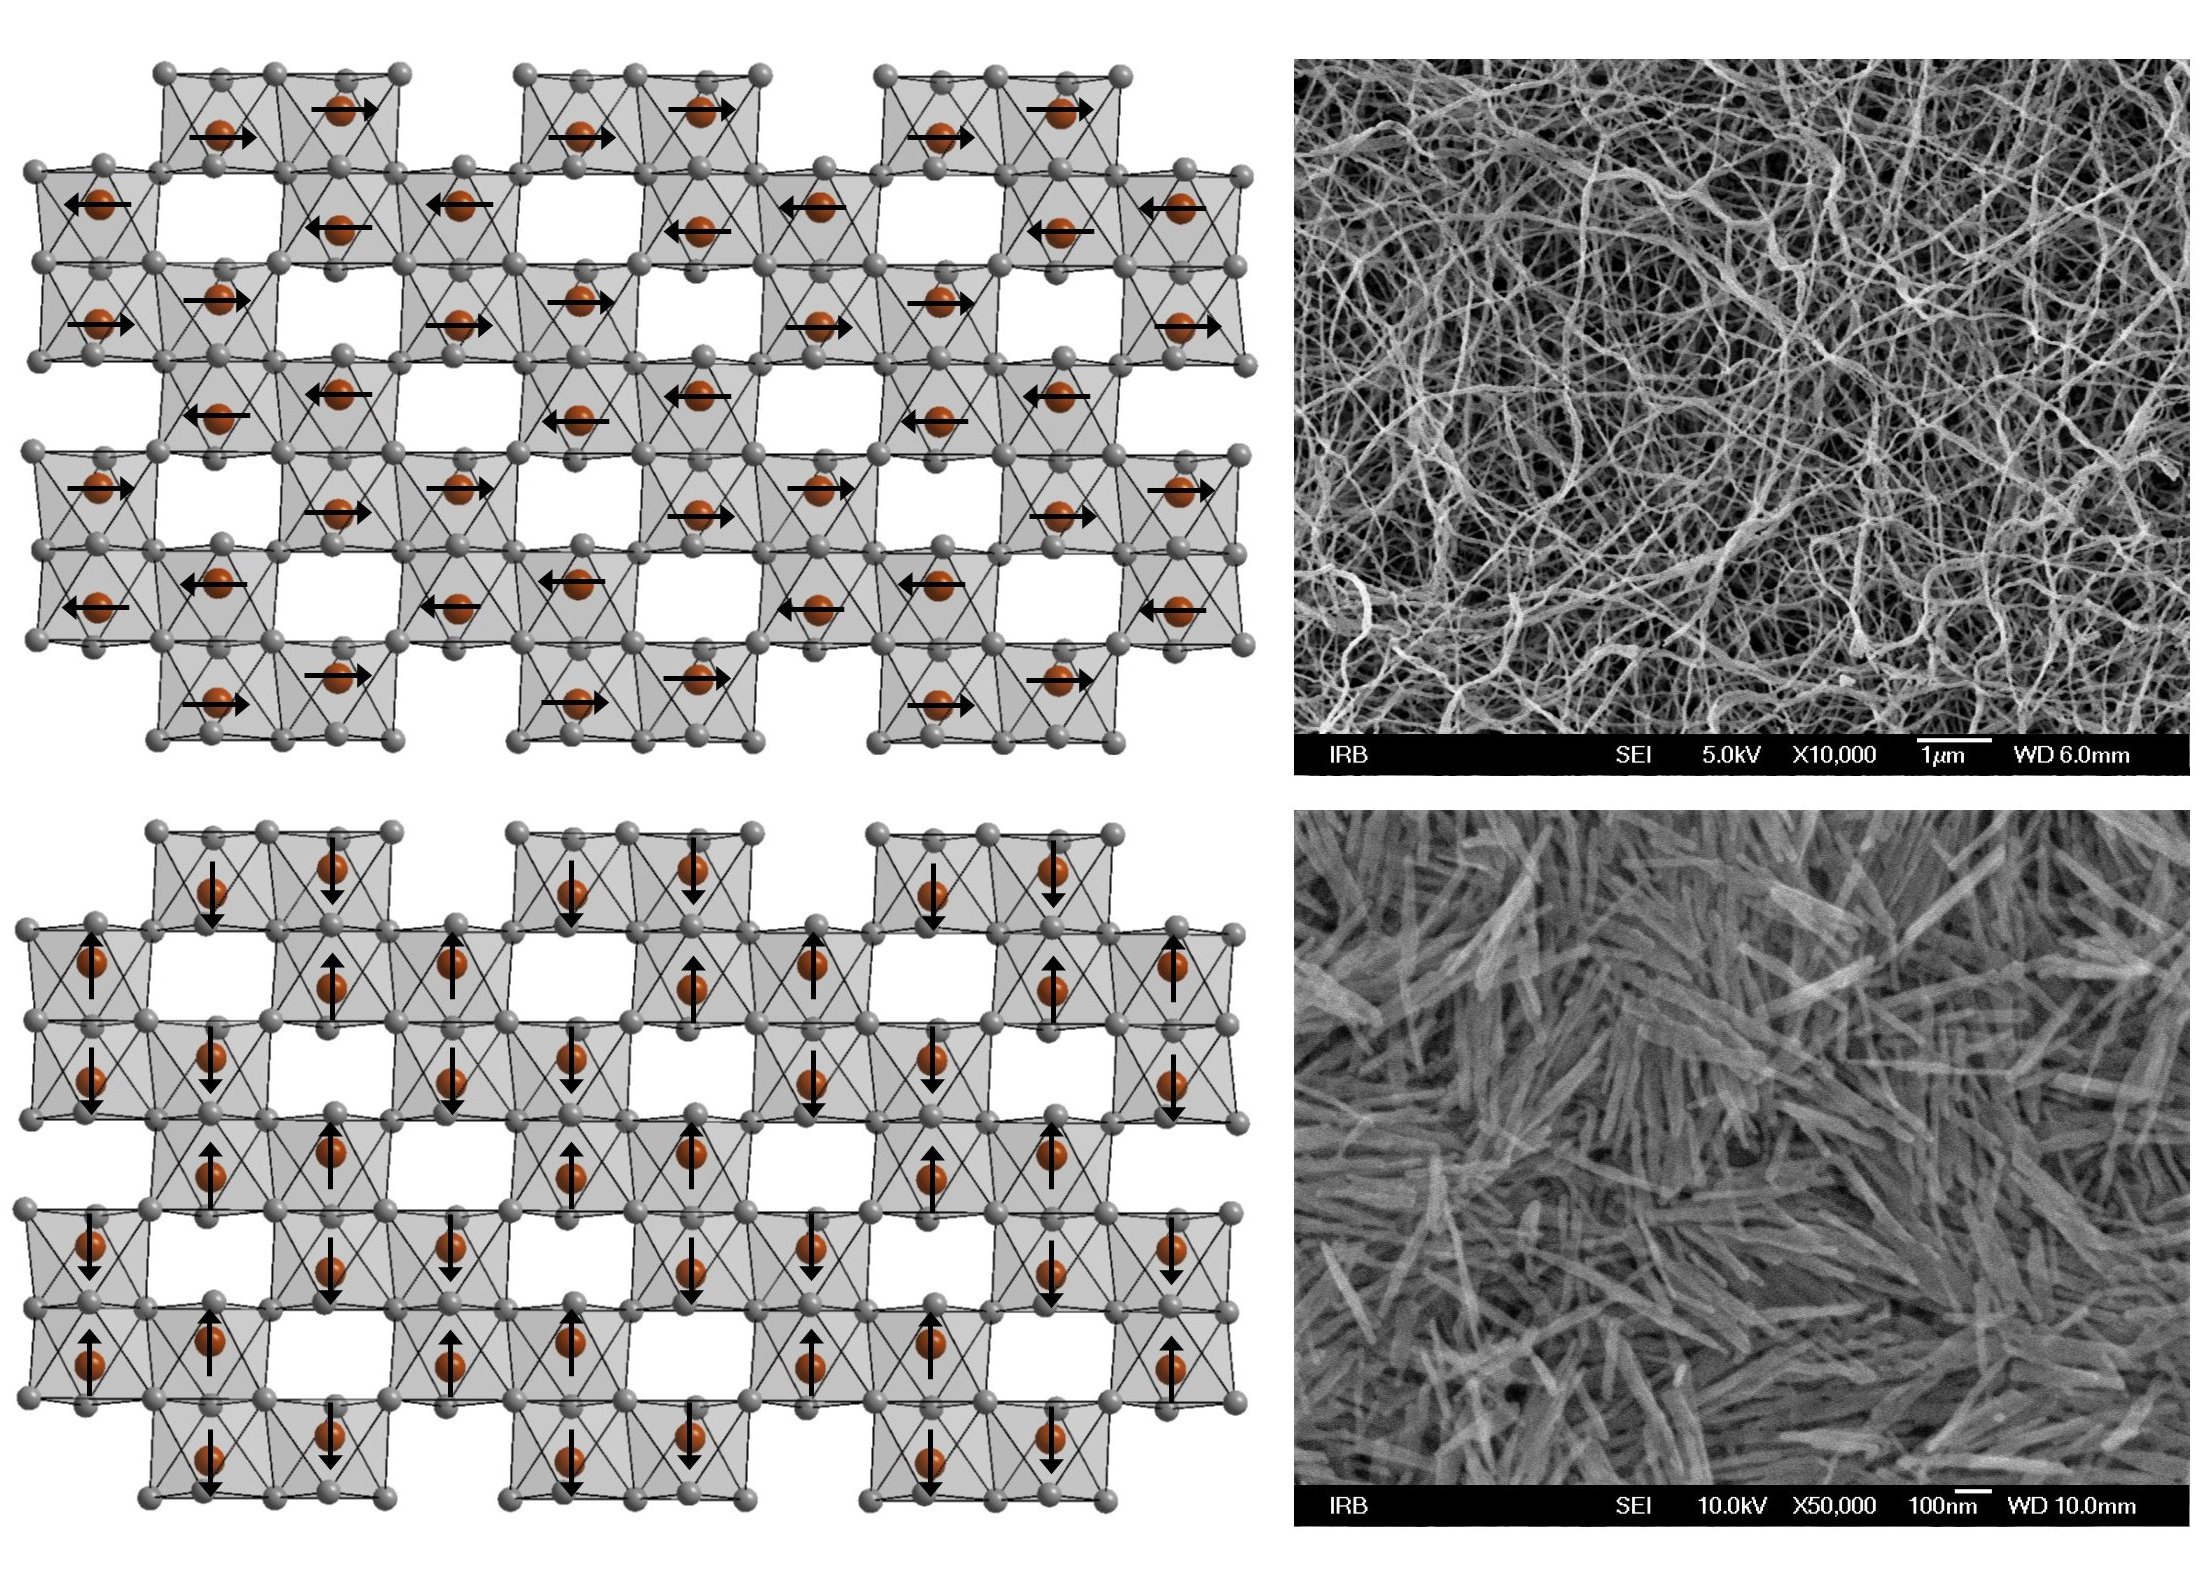 Nastajanje i svojstva 1D α-Fe2O3 nanostruktura dopiranih odabranim metalnim ionima